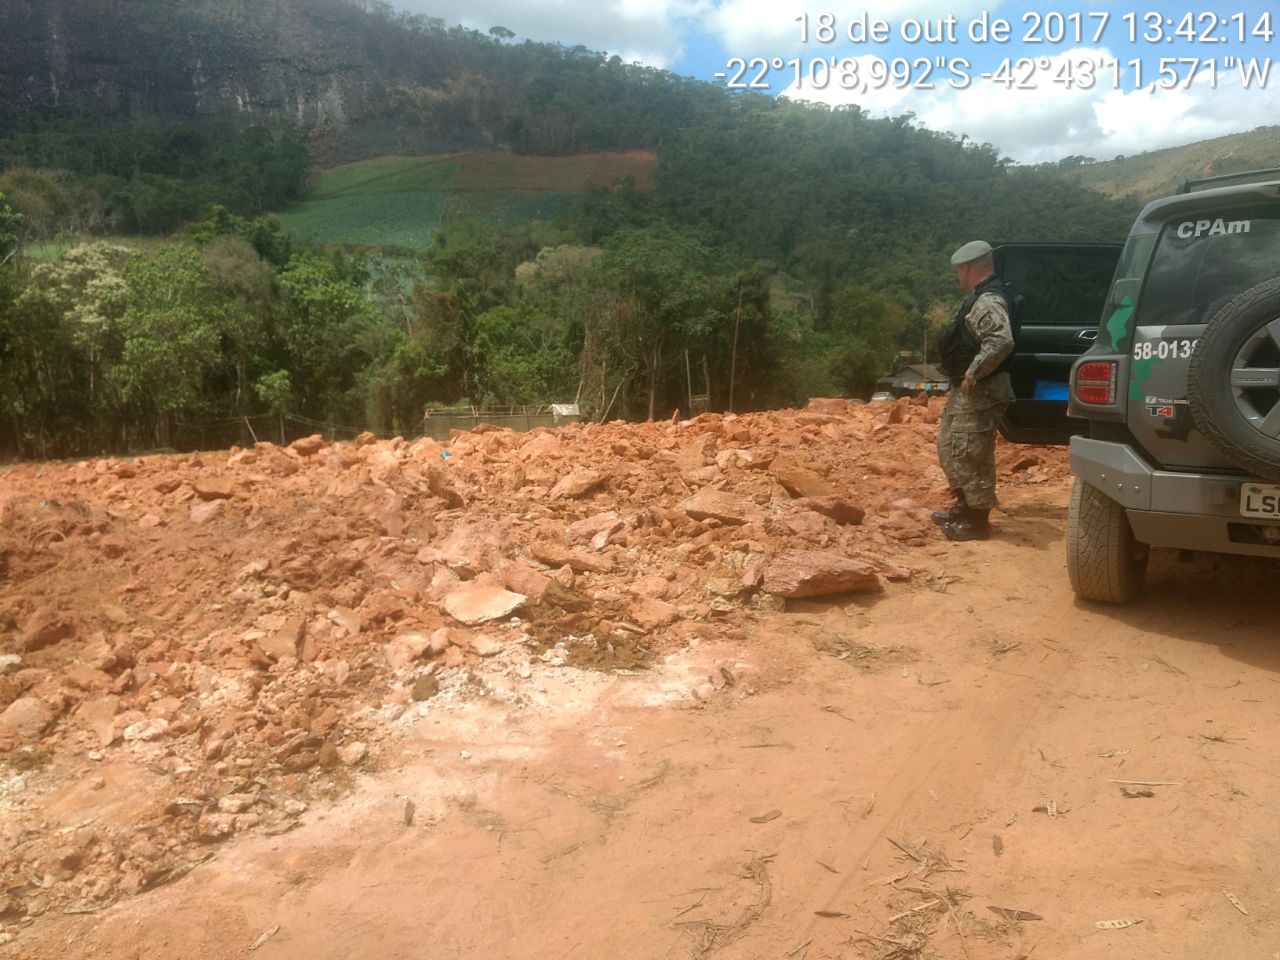 Denúncias do Linha Verde levam policia ambiental a encontrar 15 mil metros quadrados de área desmatada em Sumidouro